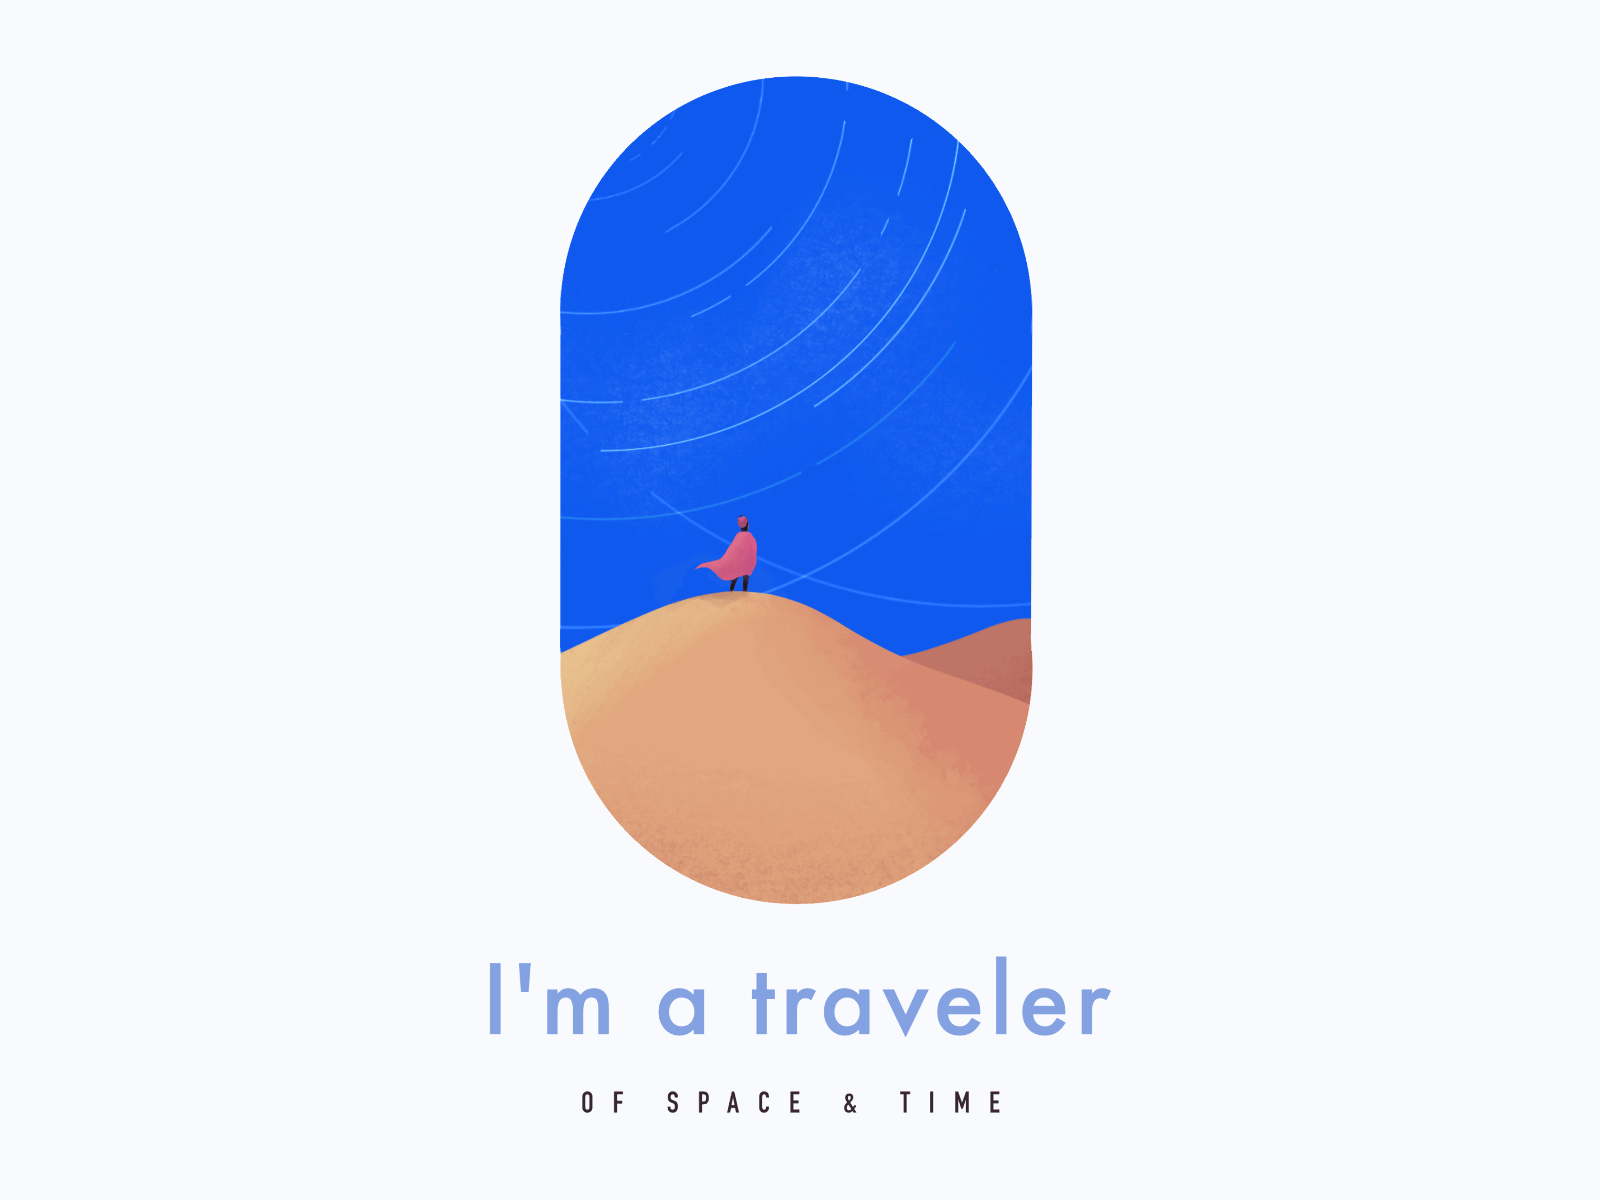 I'm a traveler